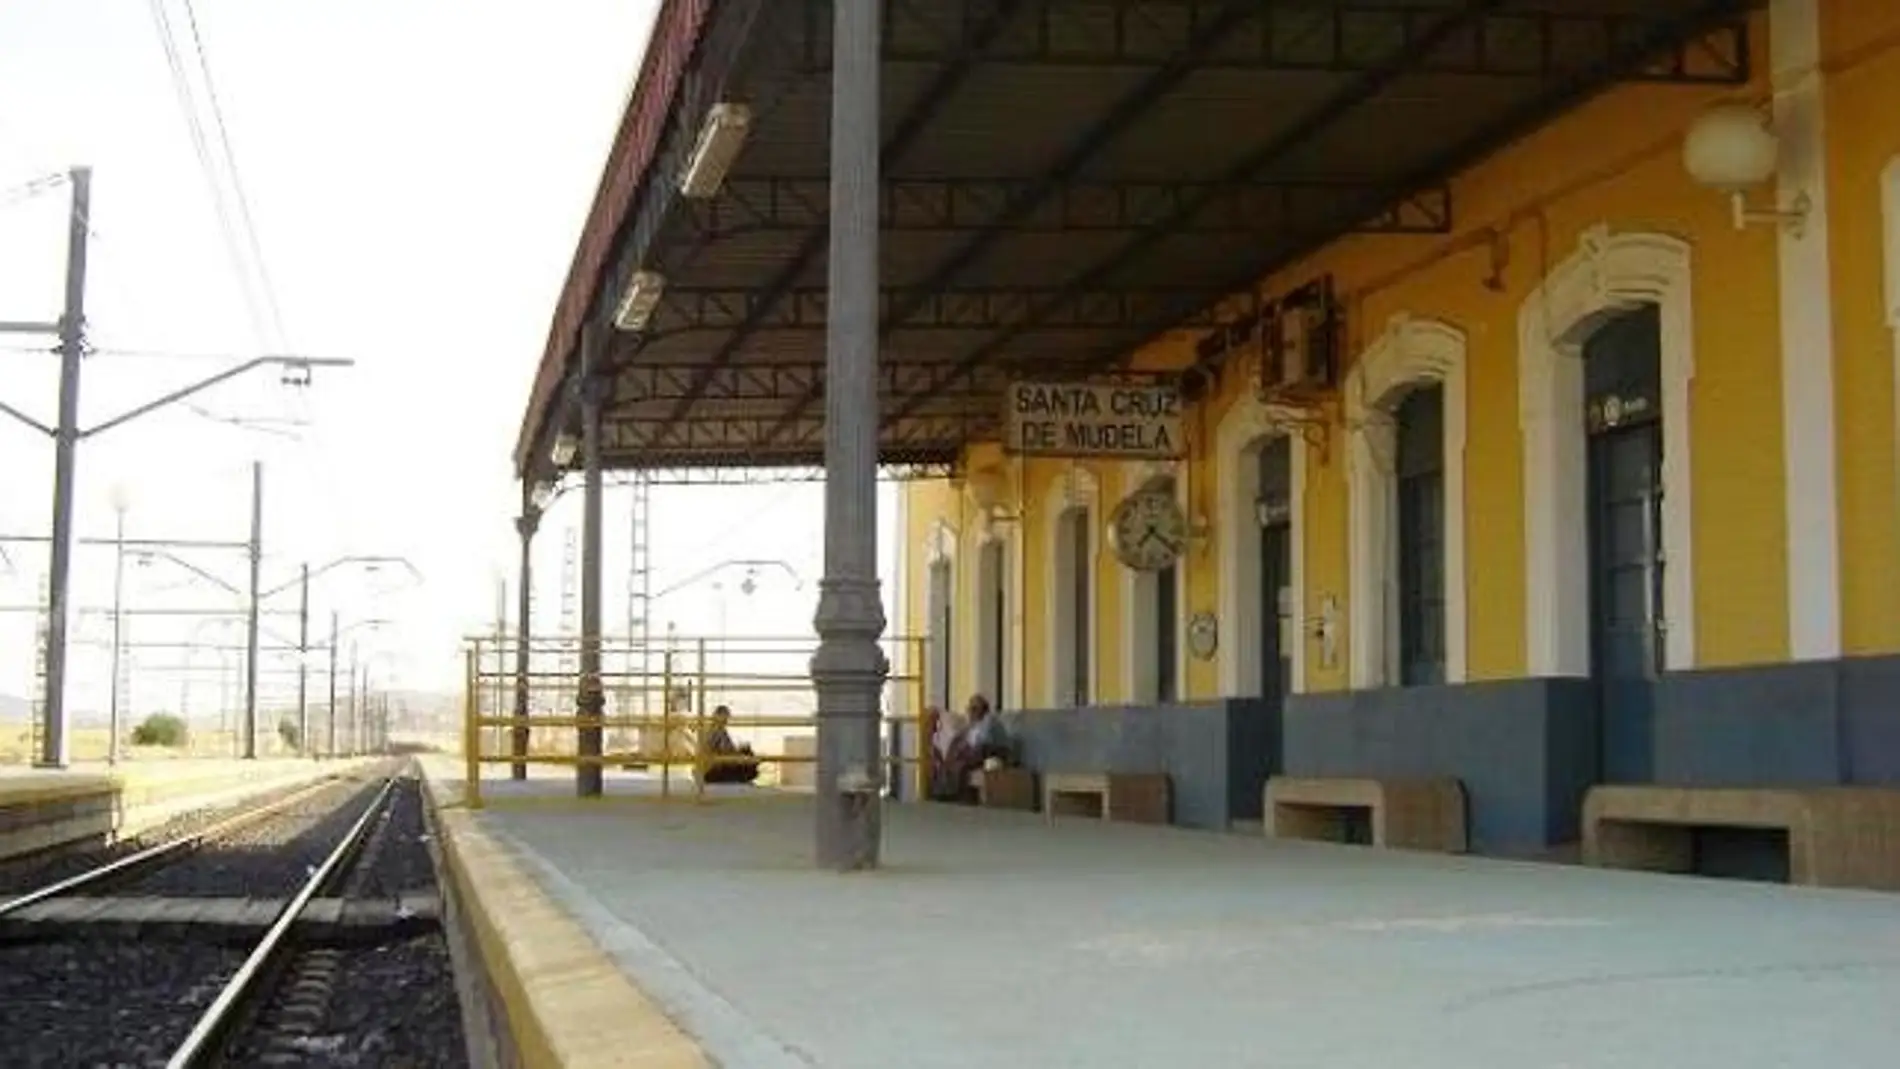 Estación de Santa Cruz de Mudela